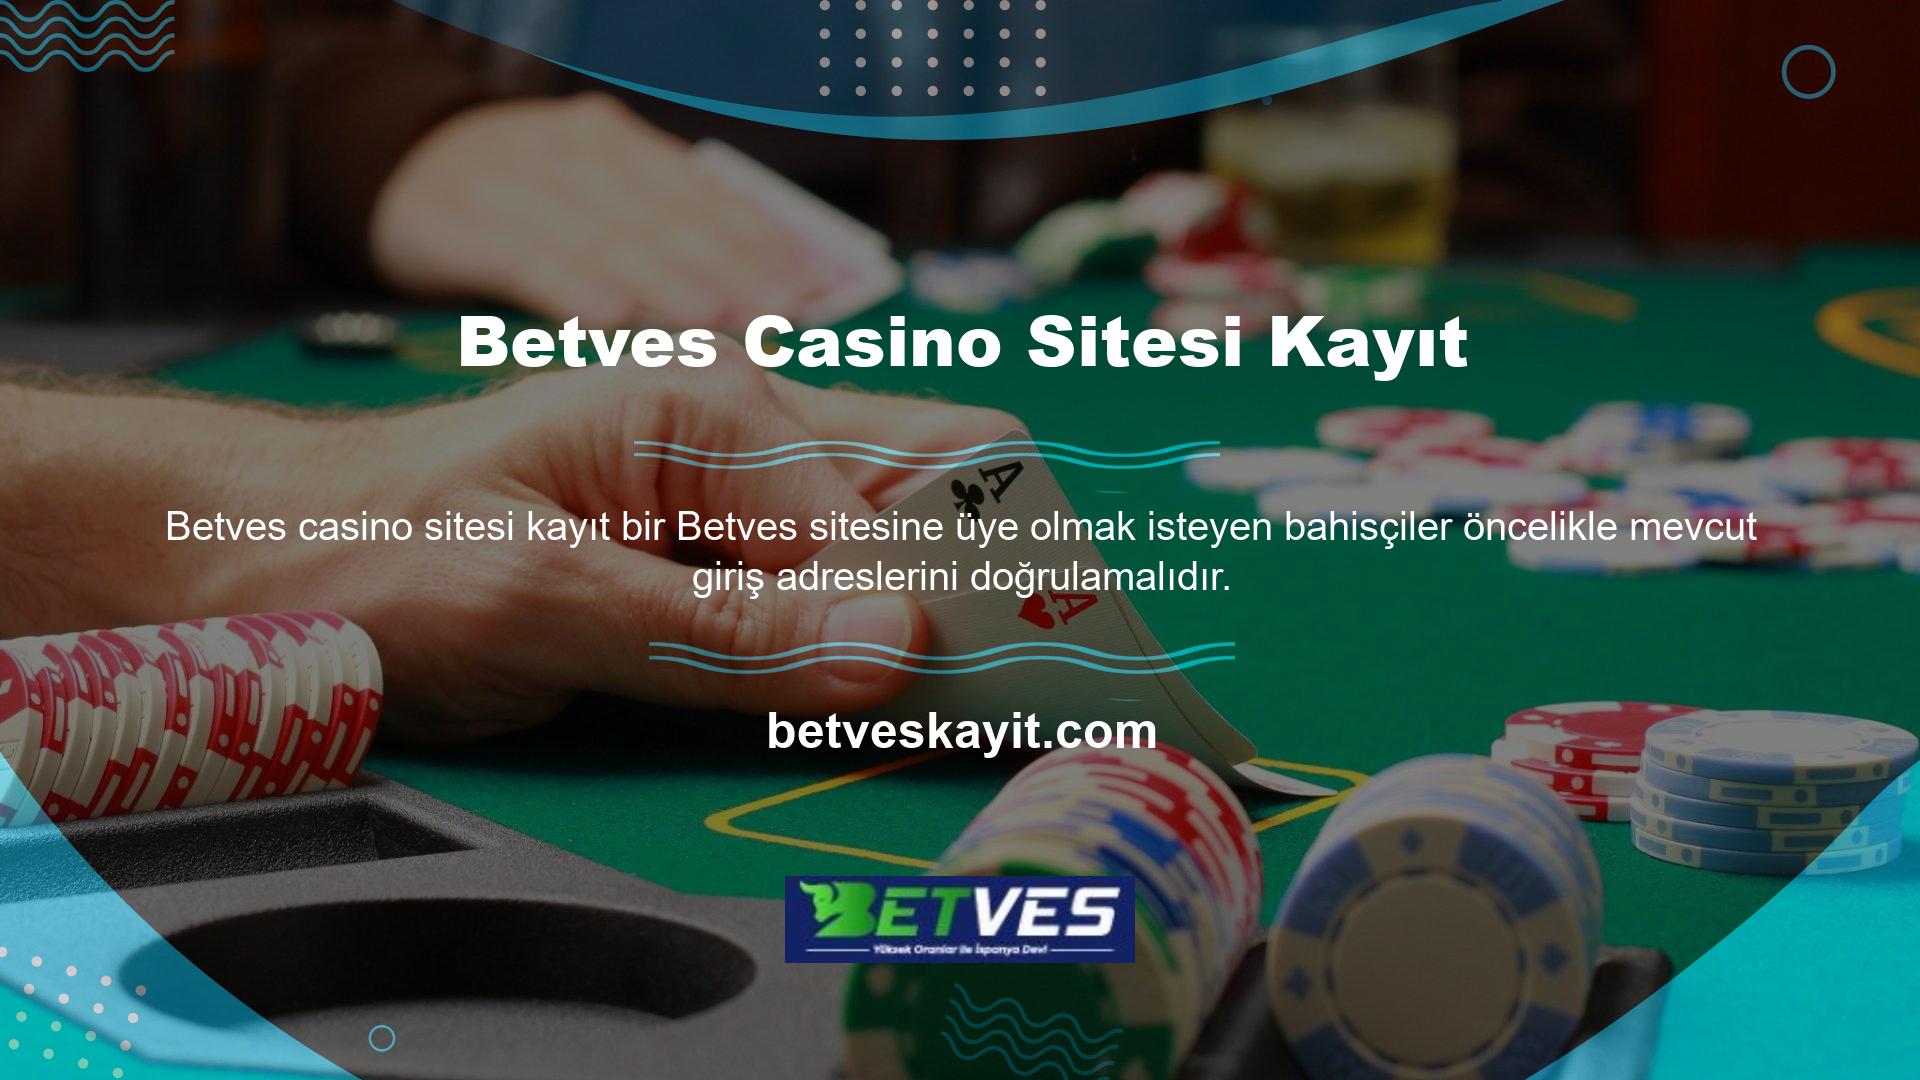 Online casino sitelerinin Türkiye'de faaliyet göstermesine izin verilmemektedir ve sitenin ve kullanıcılarının güvenliğini sağlamak için zaman zaman adresler değişmektedir